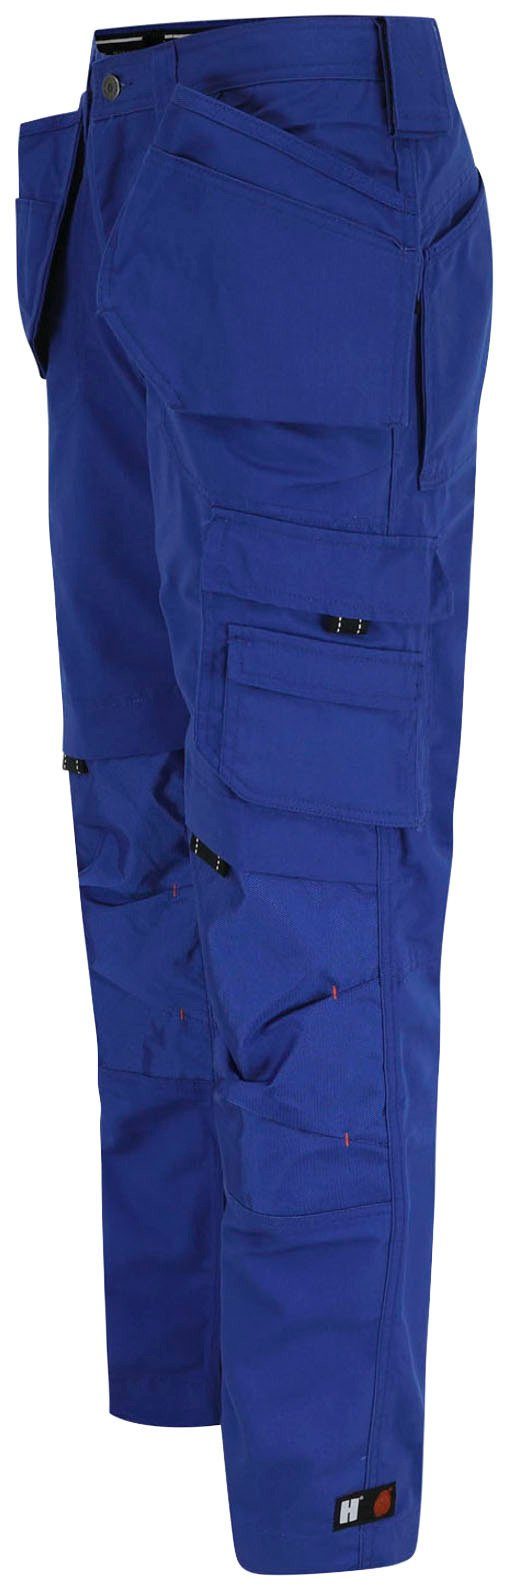 Herock Arbeitshose Dagan Hose blau (inkl. Taschen Nageltaschen) Wasserabweisend, robust, 11